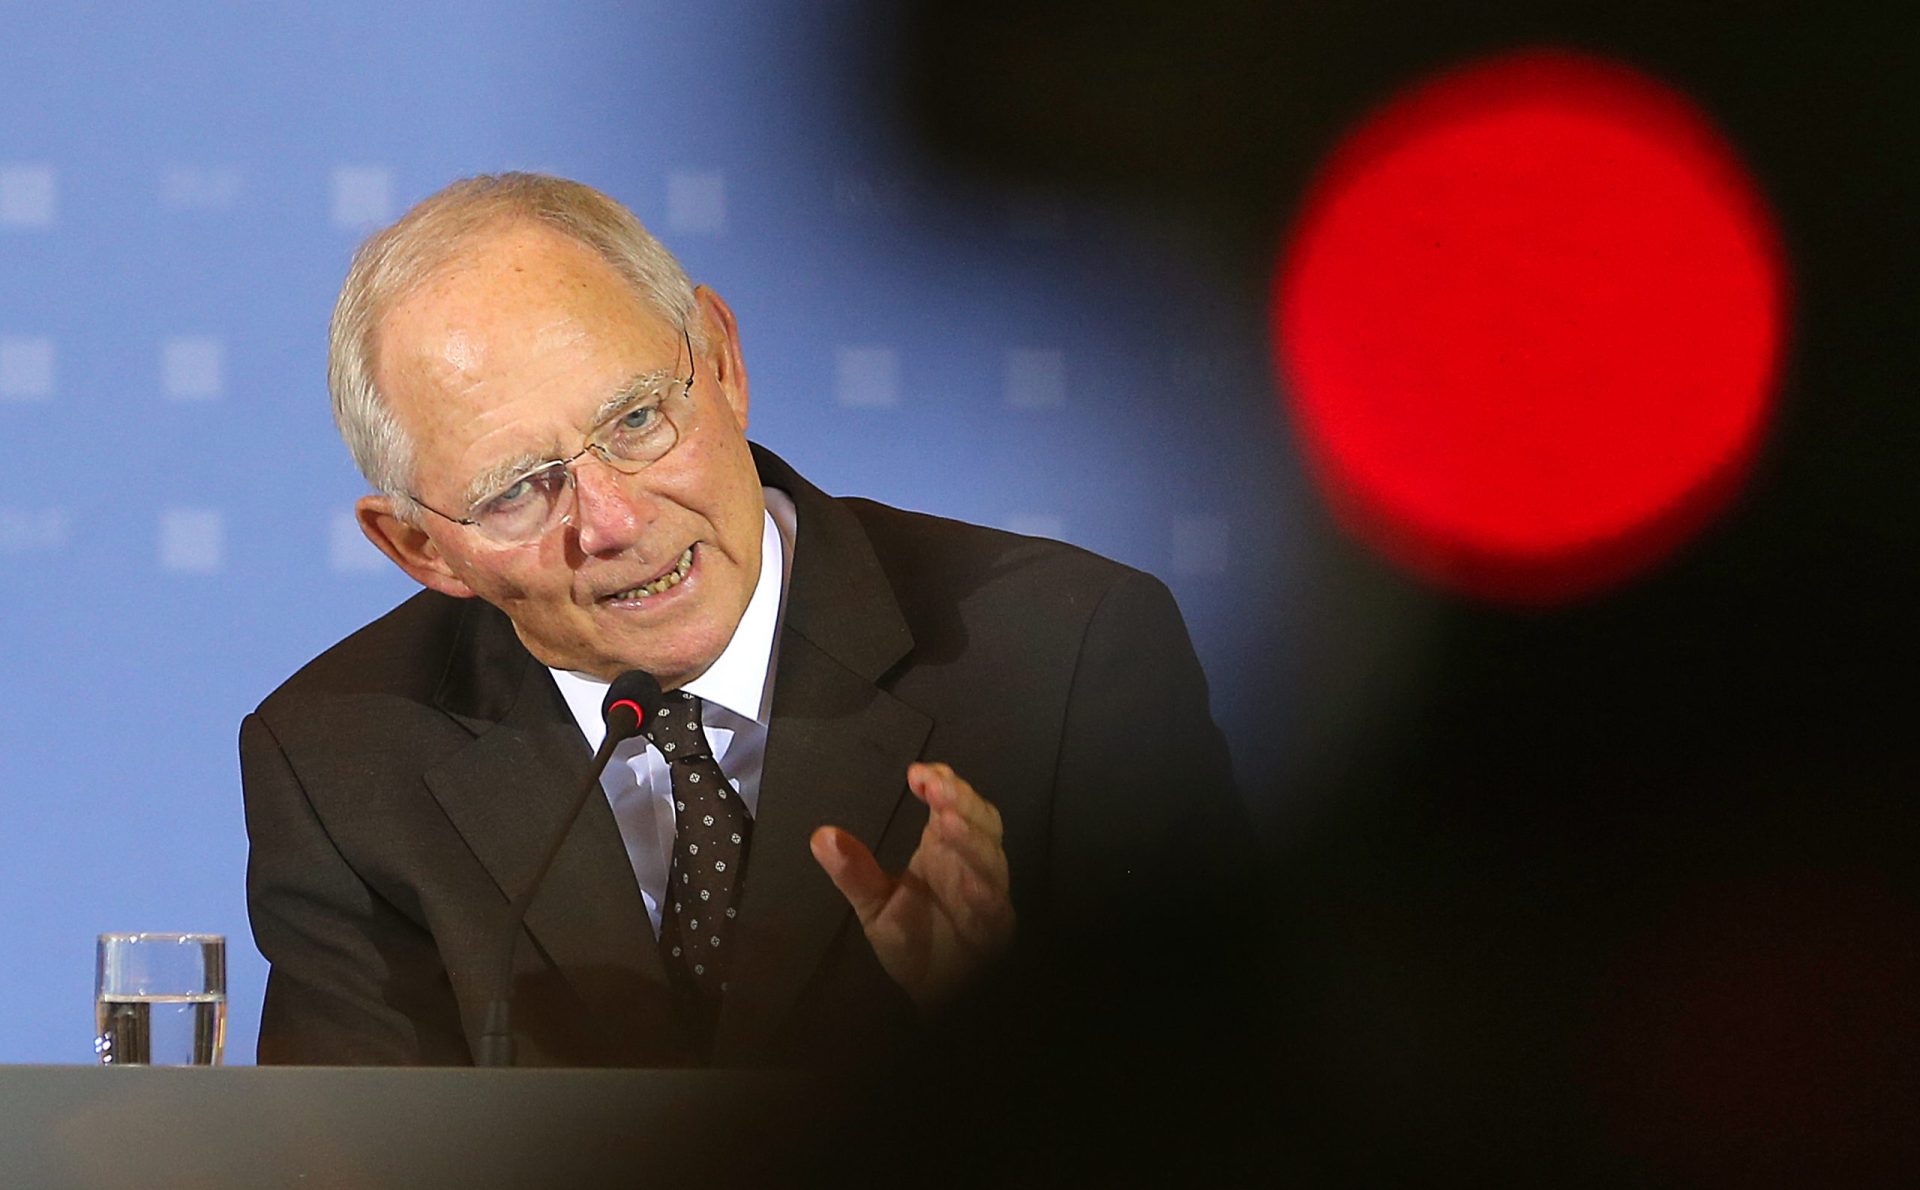 Conversações pós-referendo vão levar ‘algum tempo’, diz Schäuble